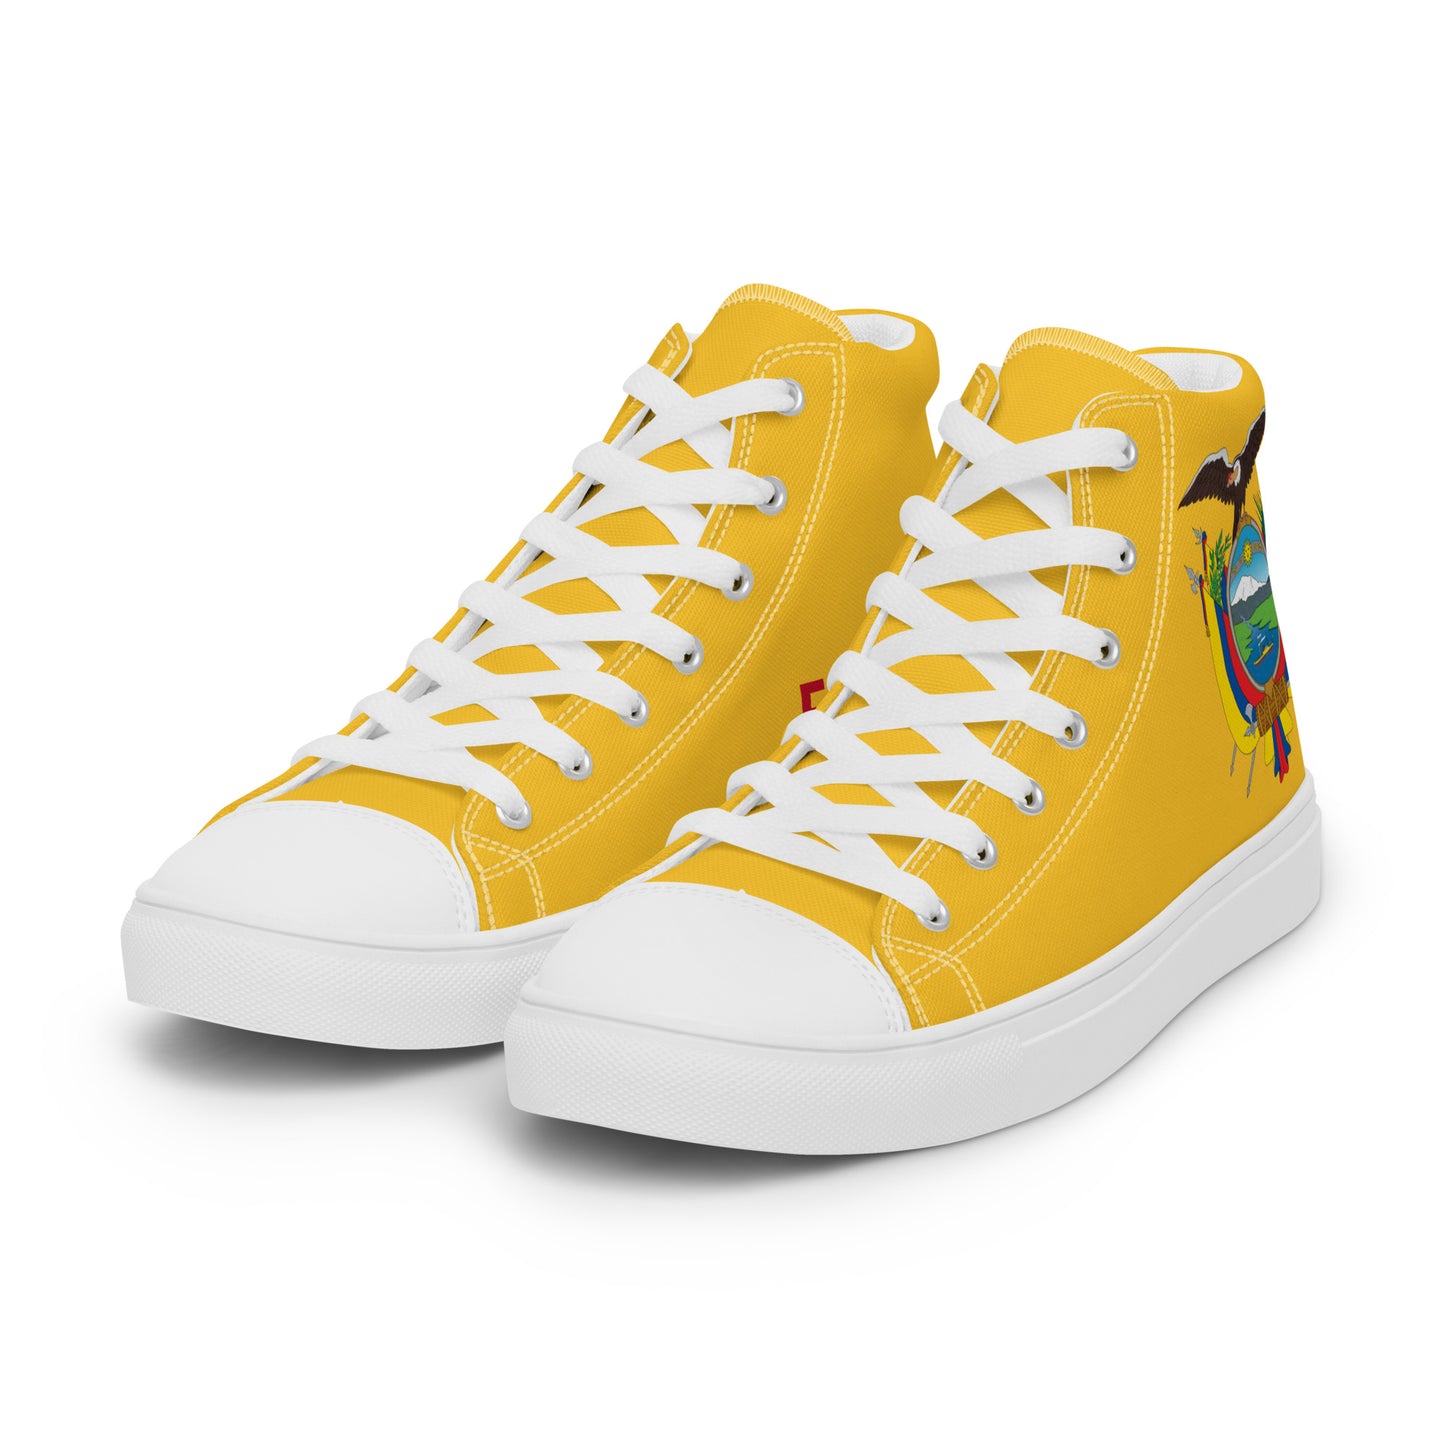 Ecuador - Women - Yellow - High top shoes